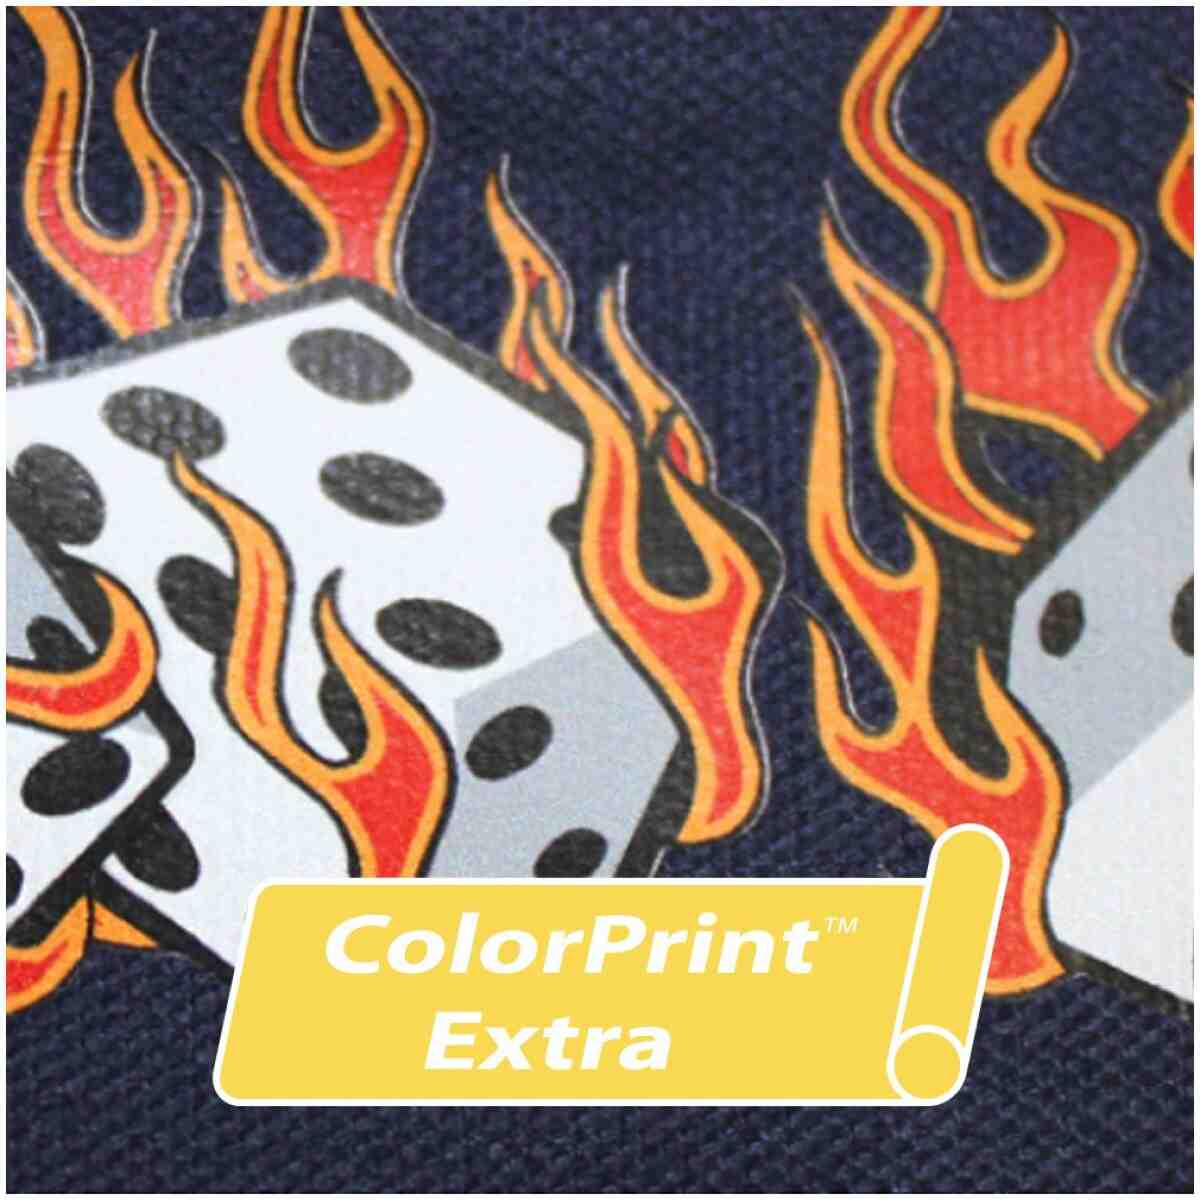 Colorprint™ Extra 29.5" (For Nylon) SISER®